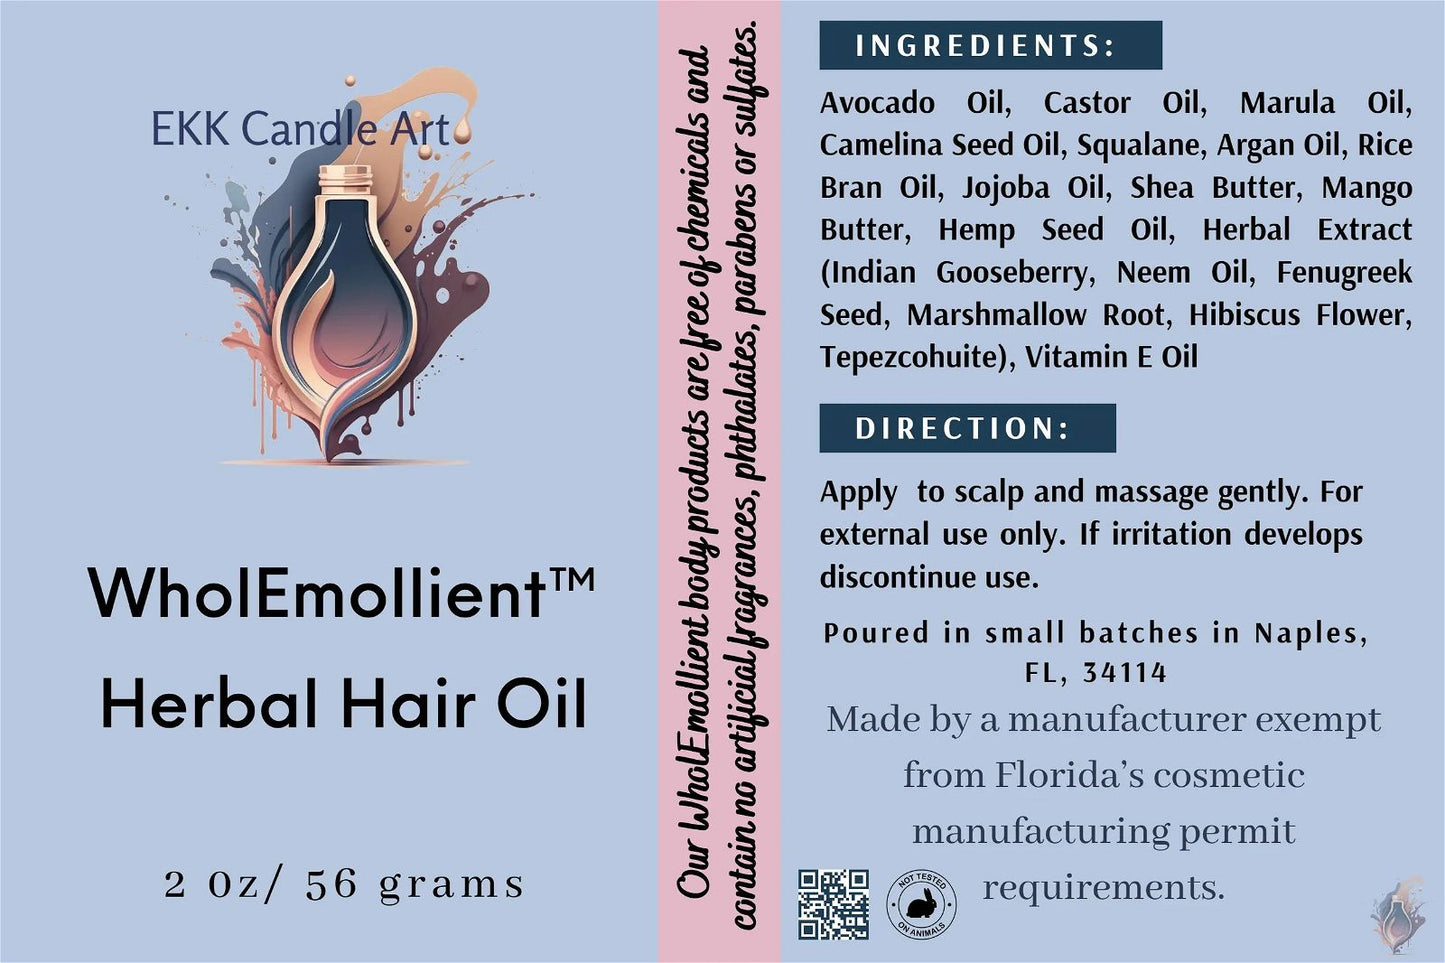 Rosemary infused Herbal Hair Oil - EKK Candle Art